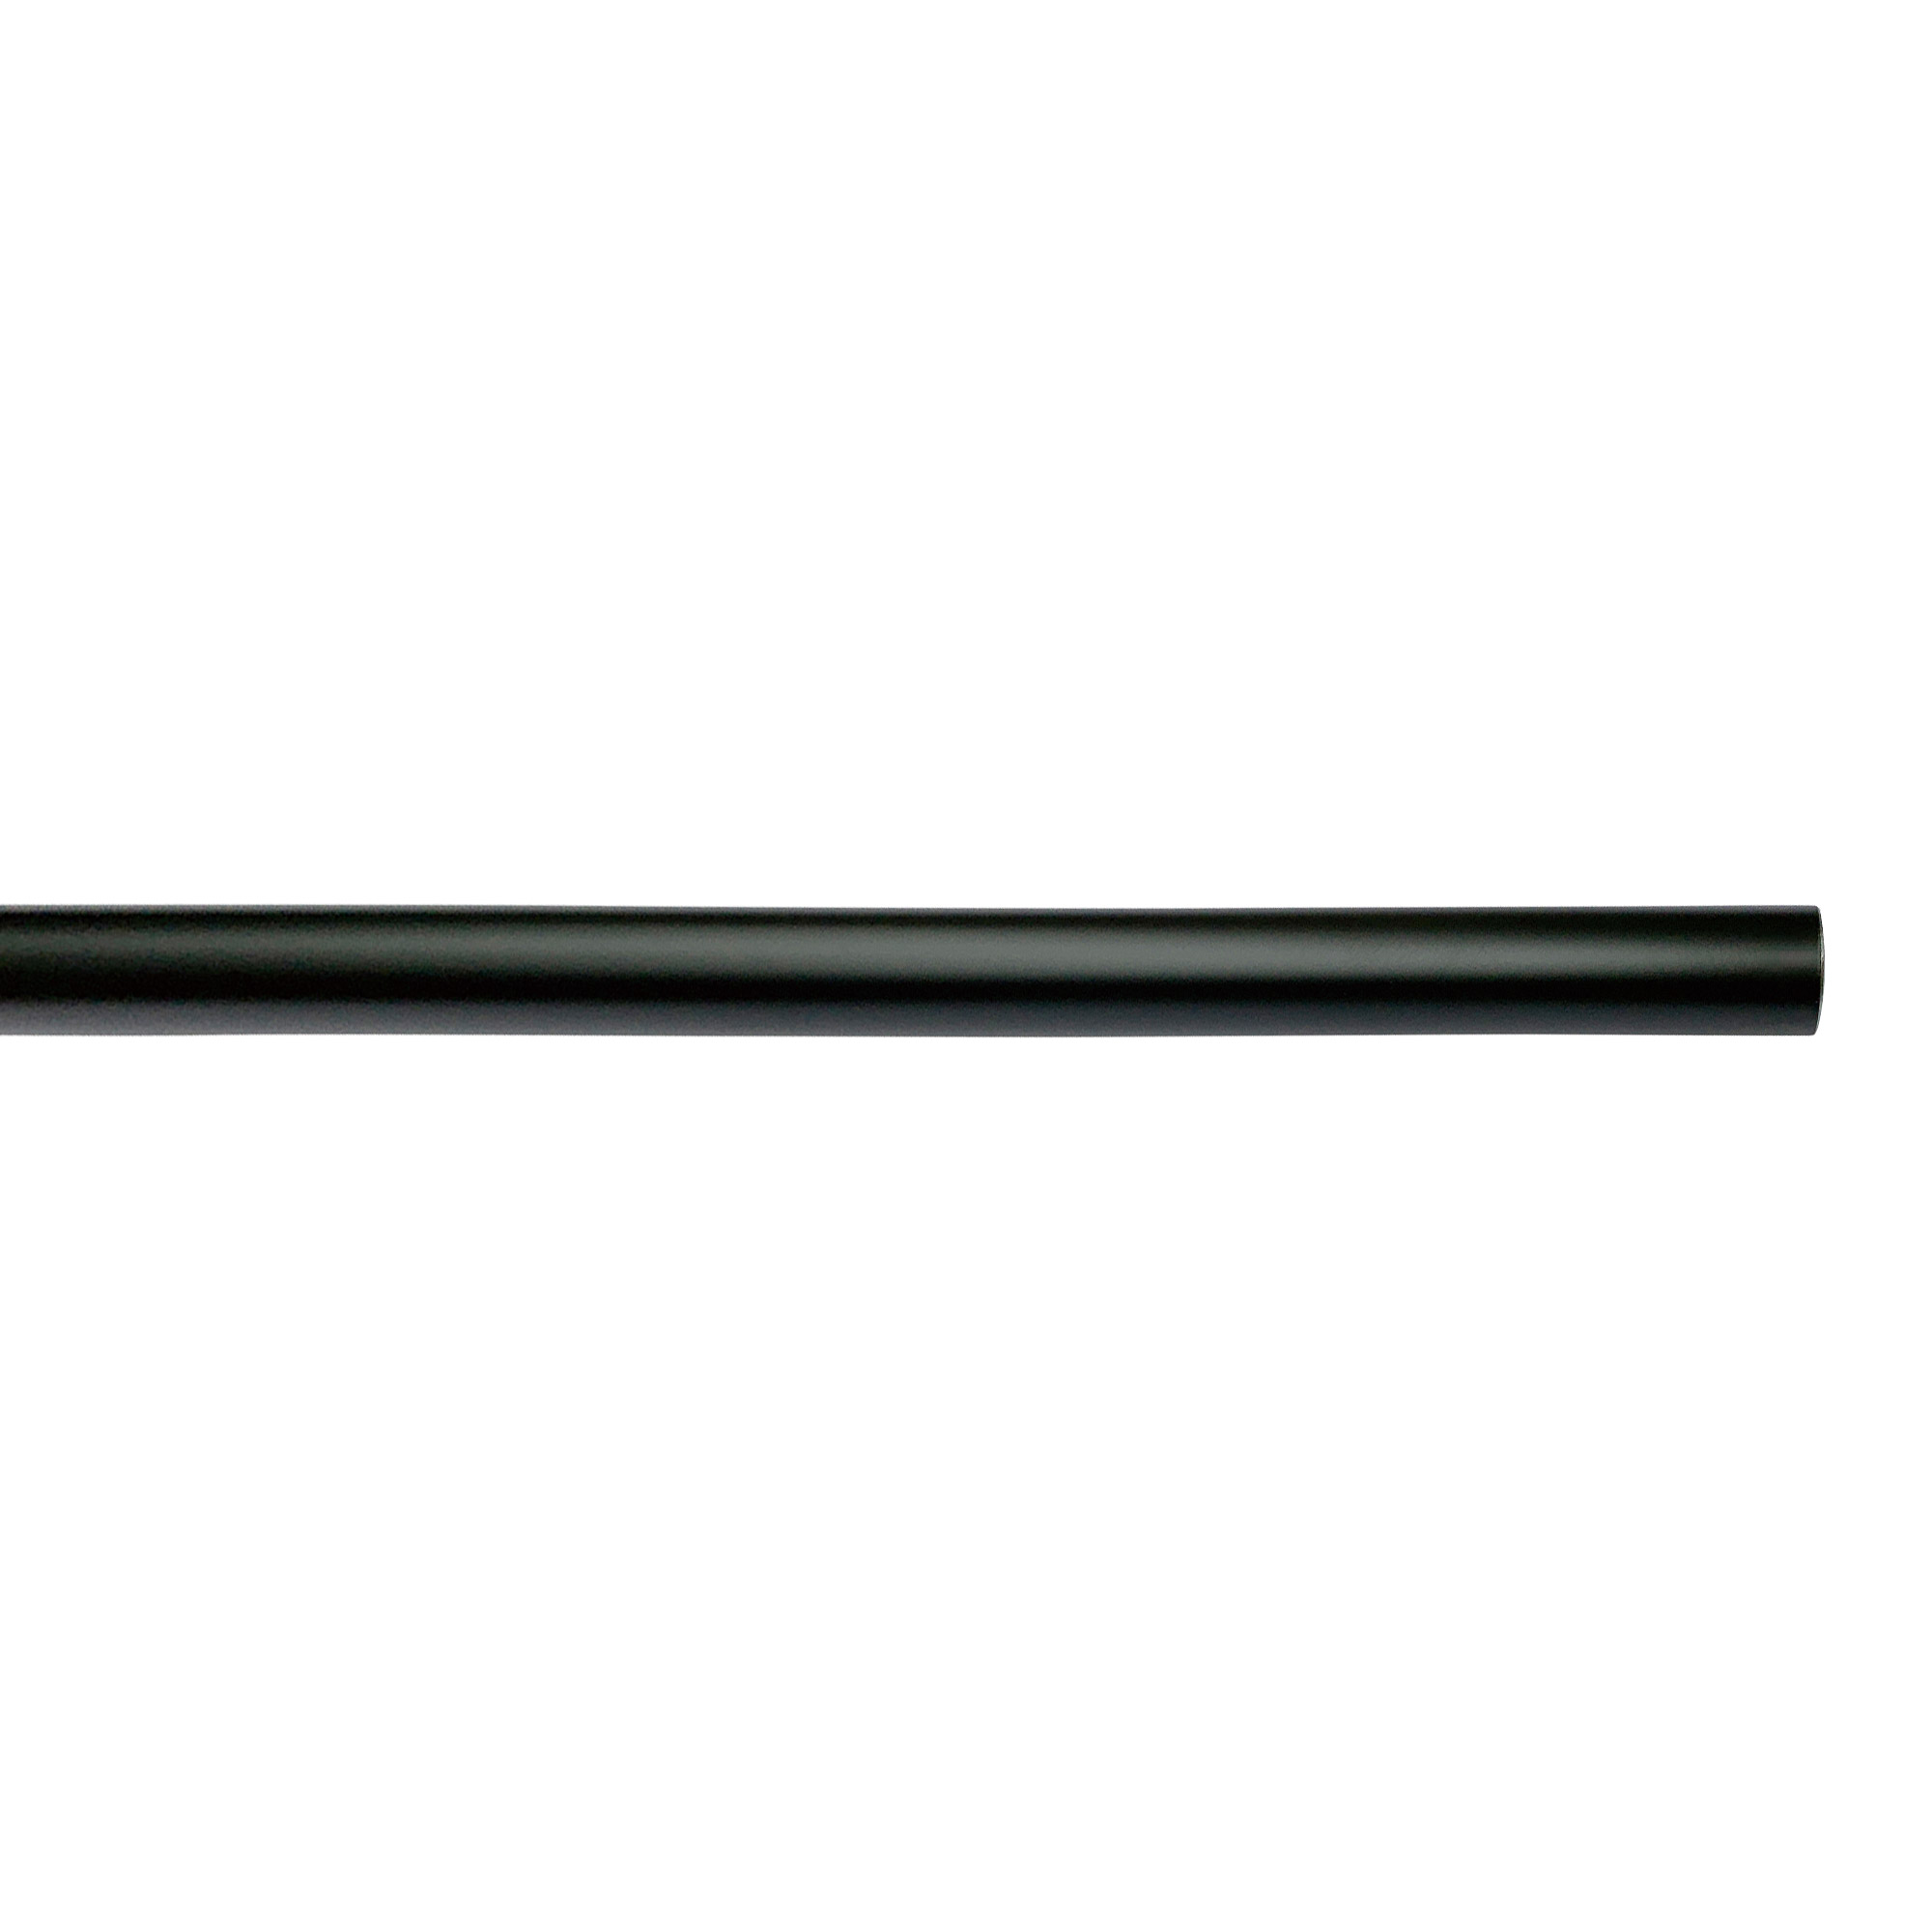 アイアンハンガーパイプ コの字型-天井吊タイプ H500 ブラック PS-HB008-55-G141 水平パイプは3サイズから選択可能です